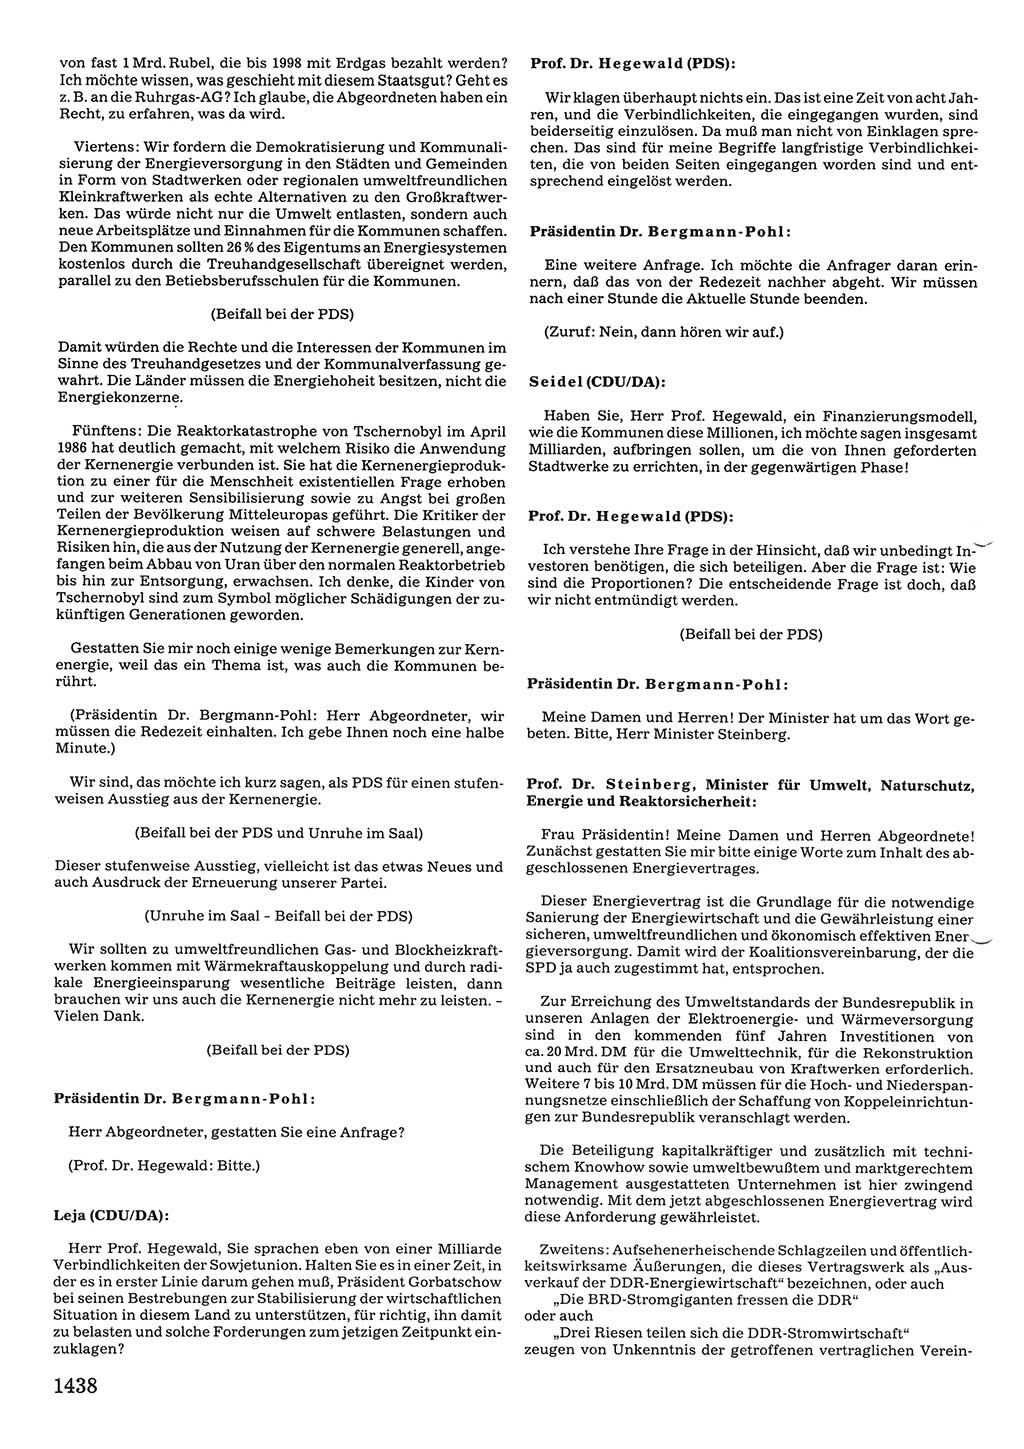 Tagungen der Volkskammer (VK) der Deutschen Demokratischen Republik (DDR), 10. Wahlperiode 1990, Seite 1438 (VK. DDR 10. WP. 1990, Prot. Tg. 1-38, 5.4.-2.10.1990, S. 1438)